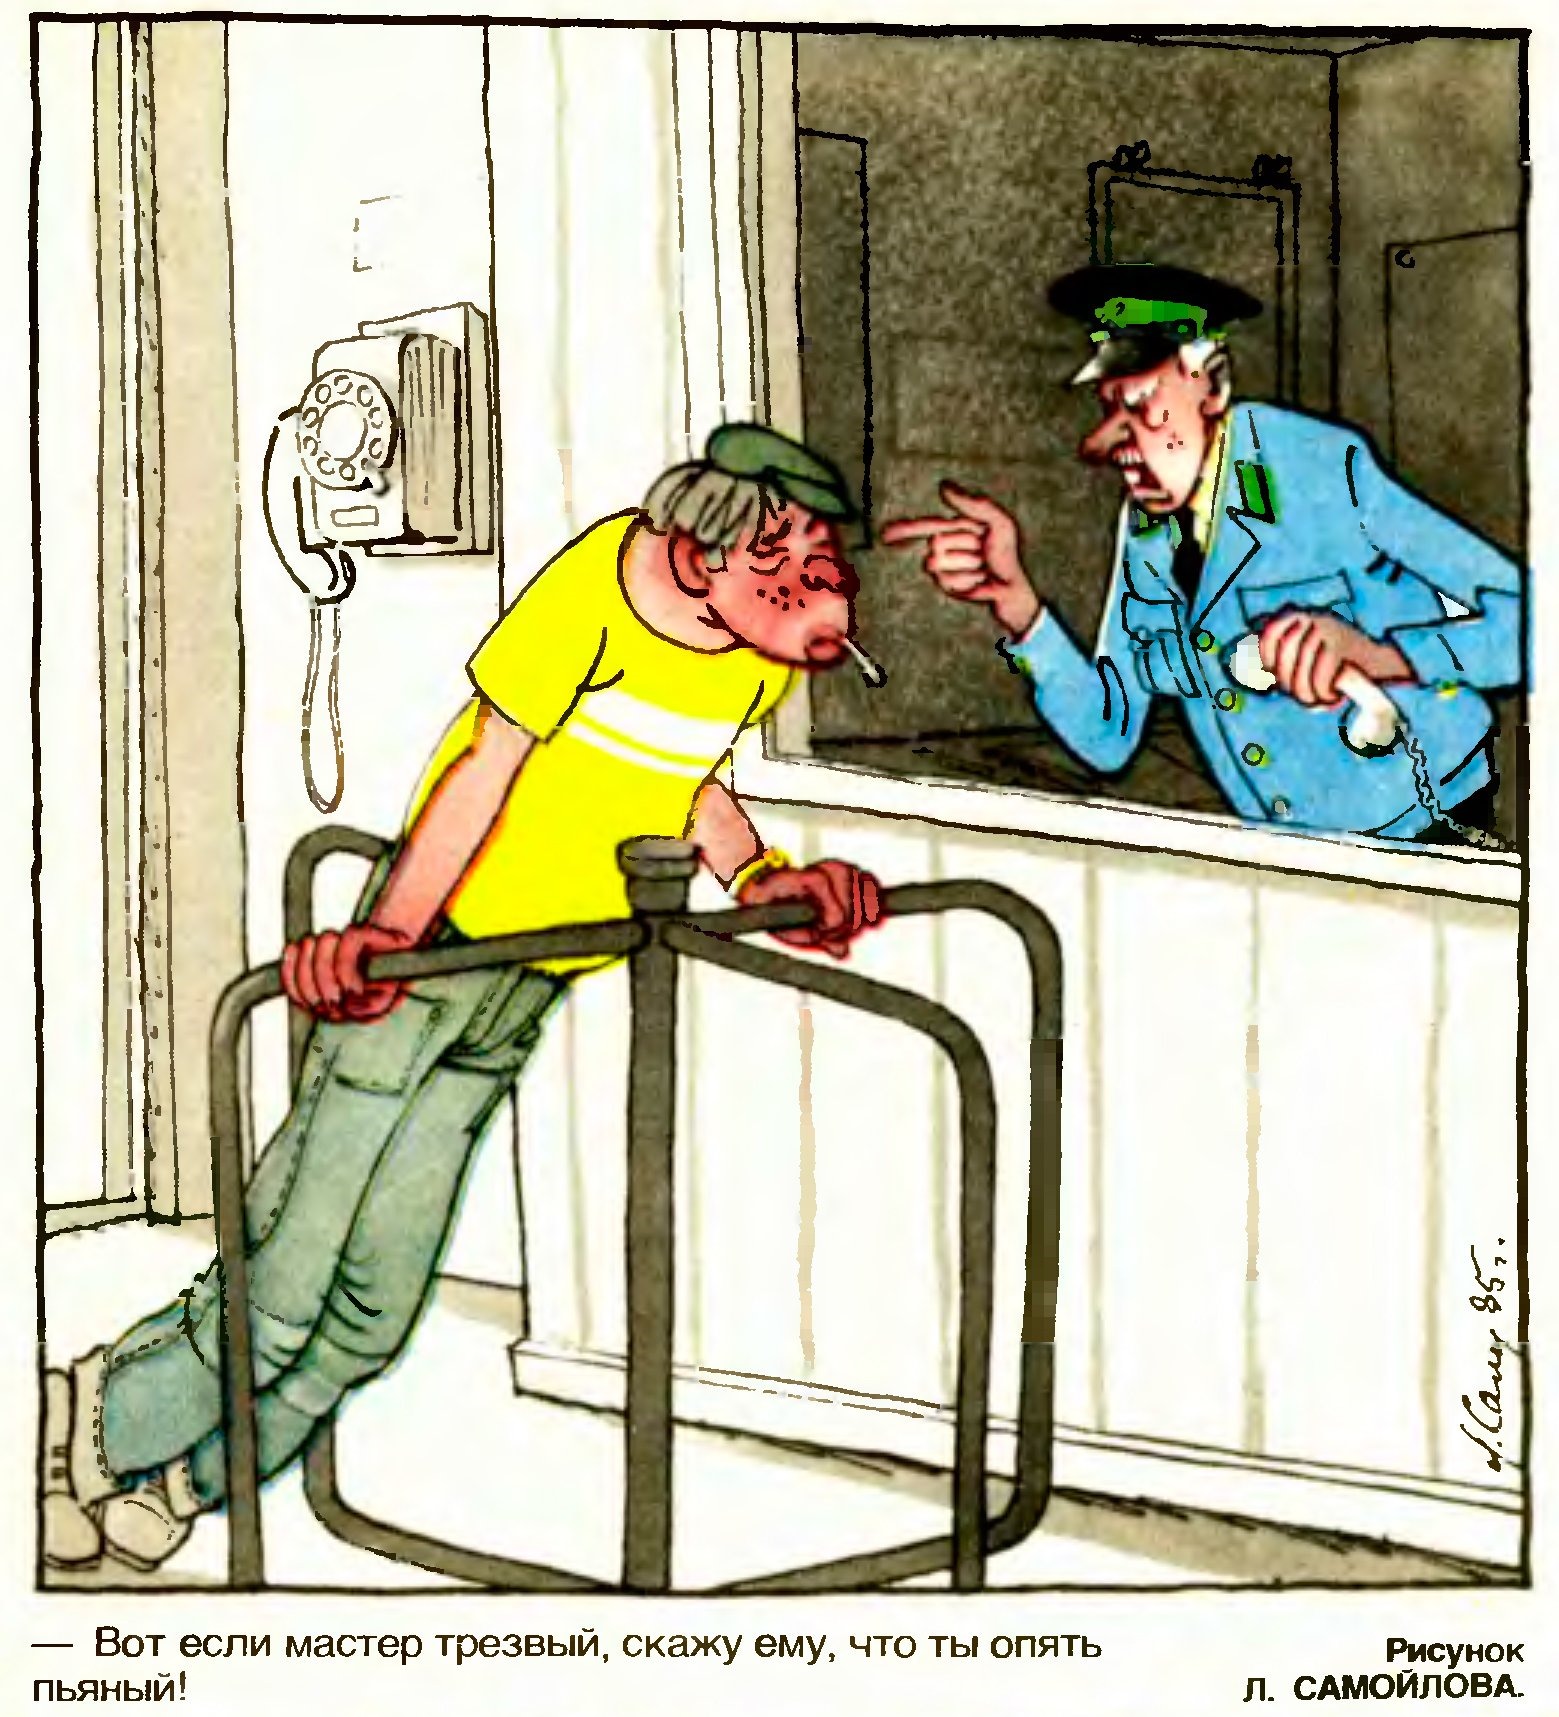 Проходная что в люди вывела меня. Советские карикатуры на алкоголиков. Завод карикатура. Советские карикатуры пьянство. Карикатура пьянство на работе.